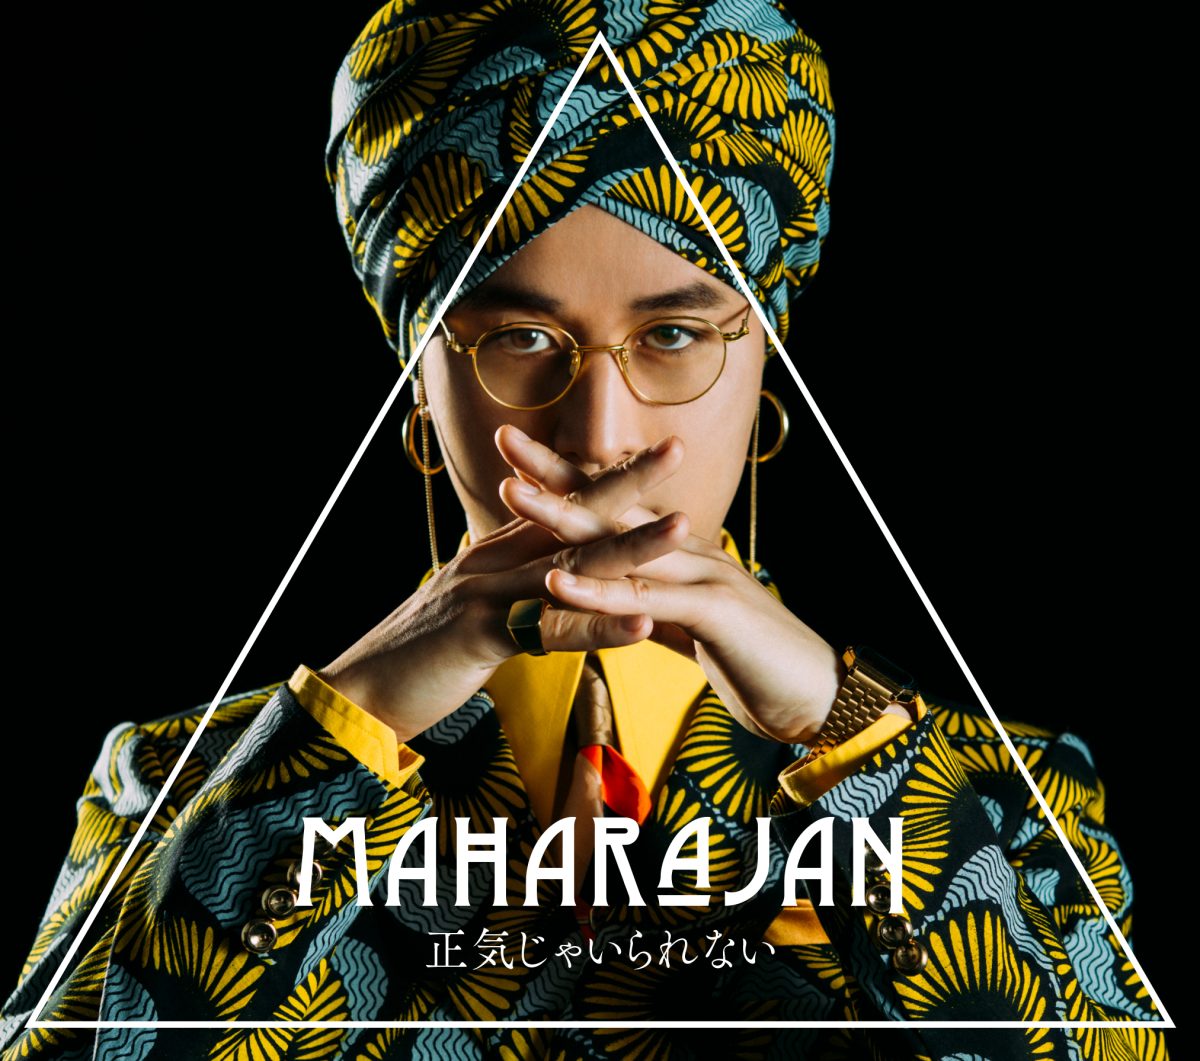 マハラージャン、メジャー2nd Album『正気じゃいられない』に収録される強烈な楽曲タイトルを公開！